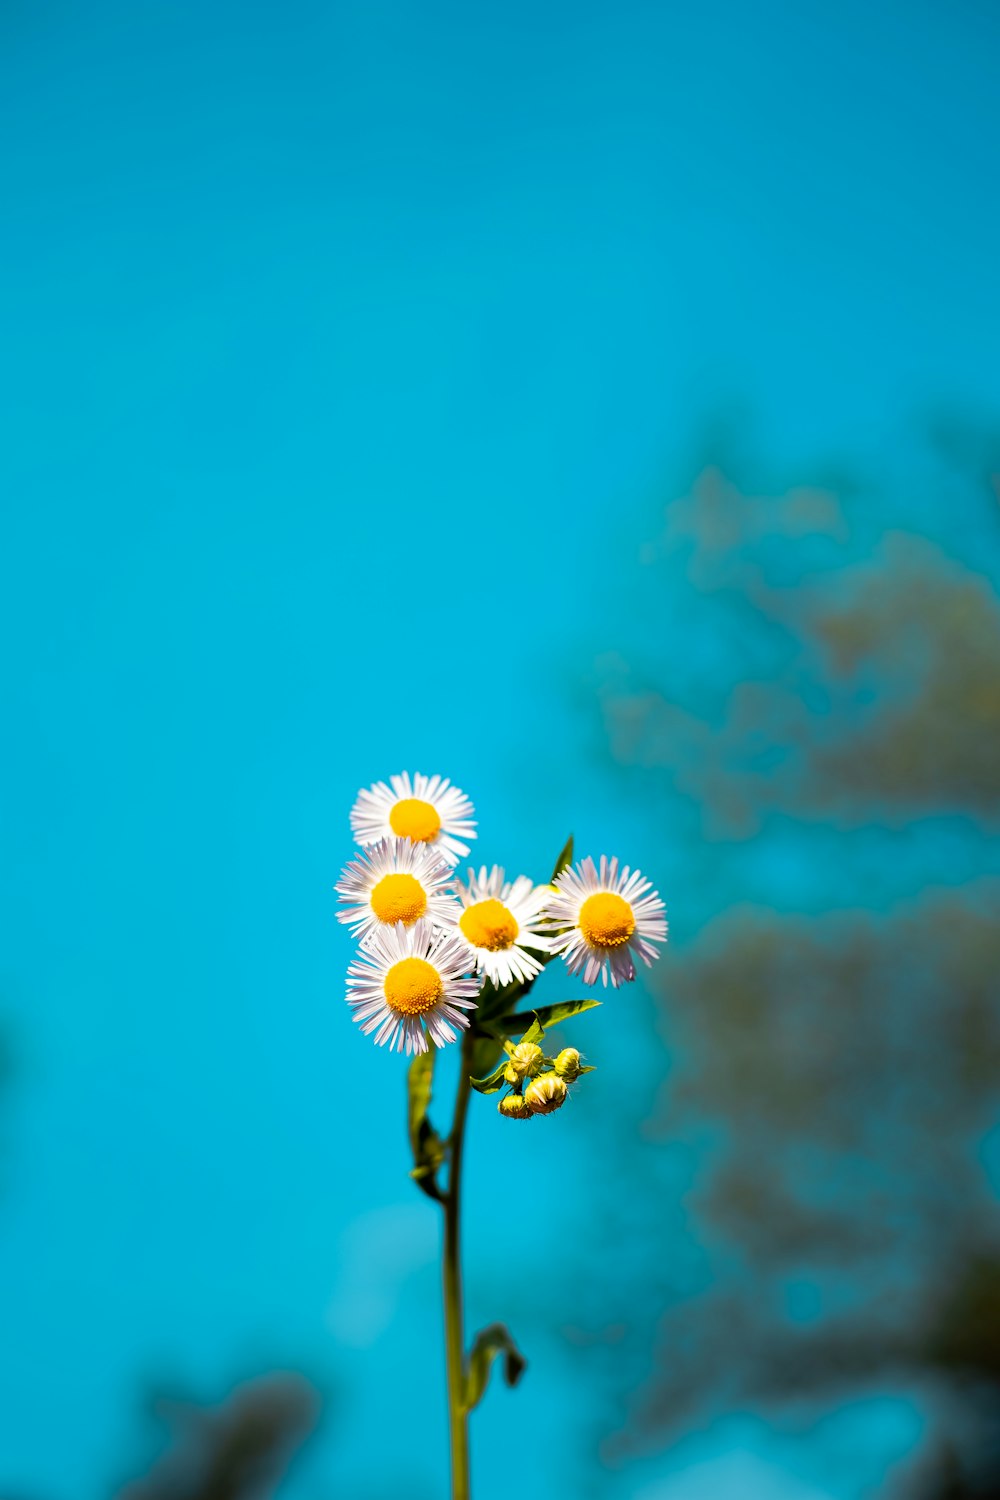 fiore bianco e giallo della margherita sotto il cielo blu